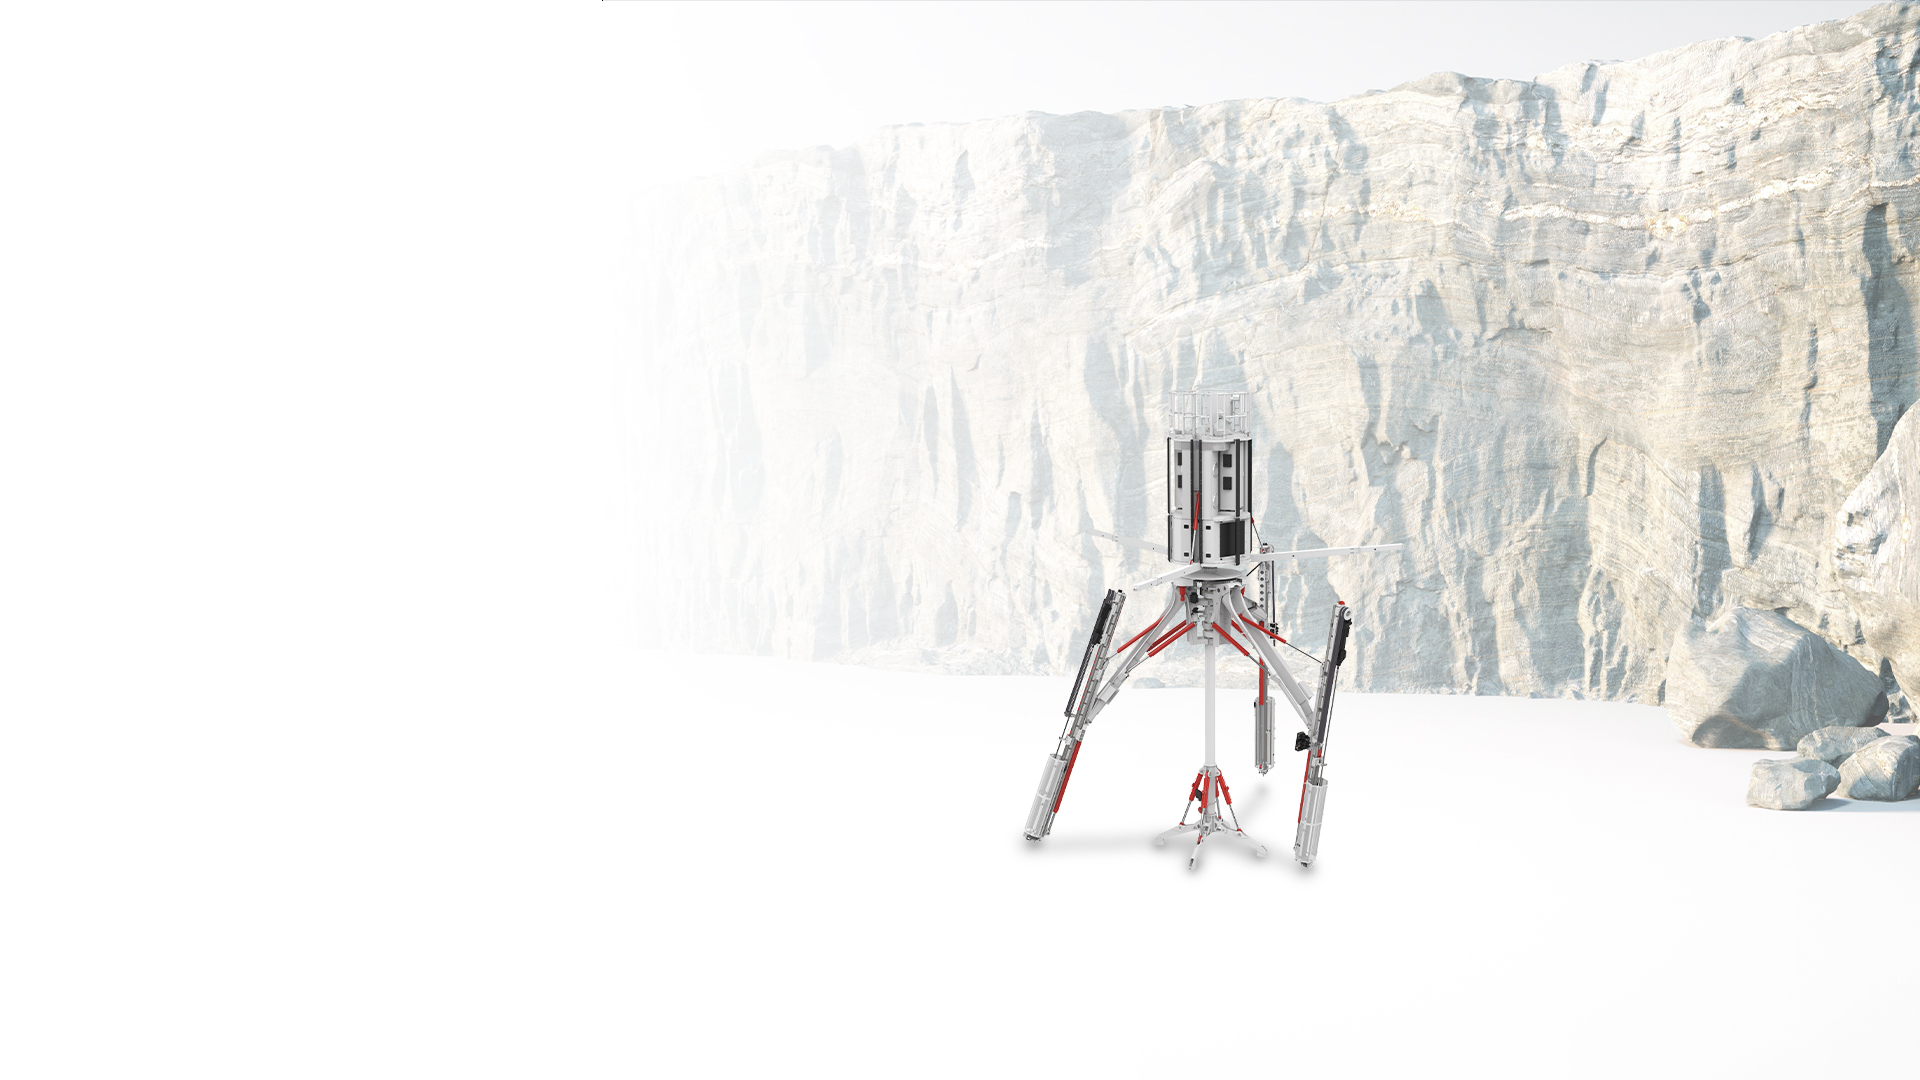 3D-иллюстрация шахтного бурового станка в красно-белых тонах